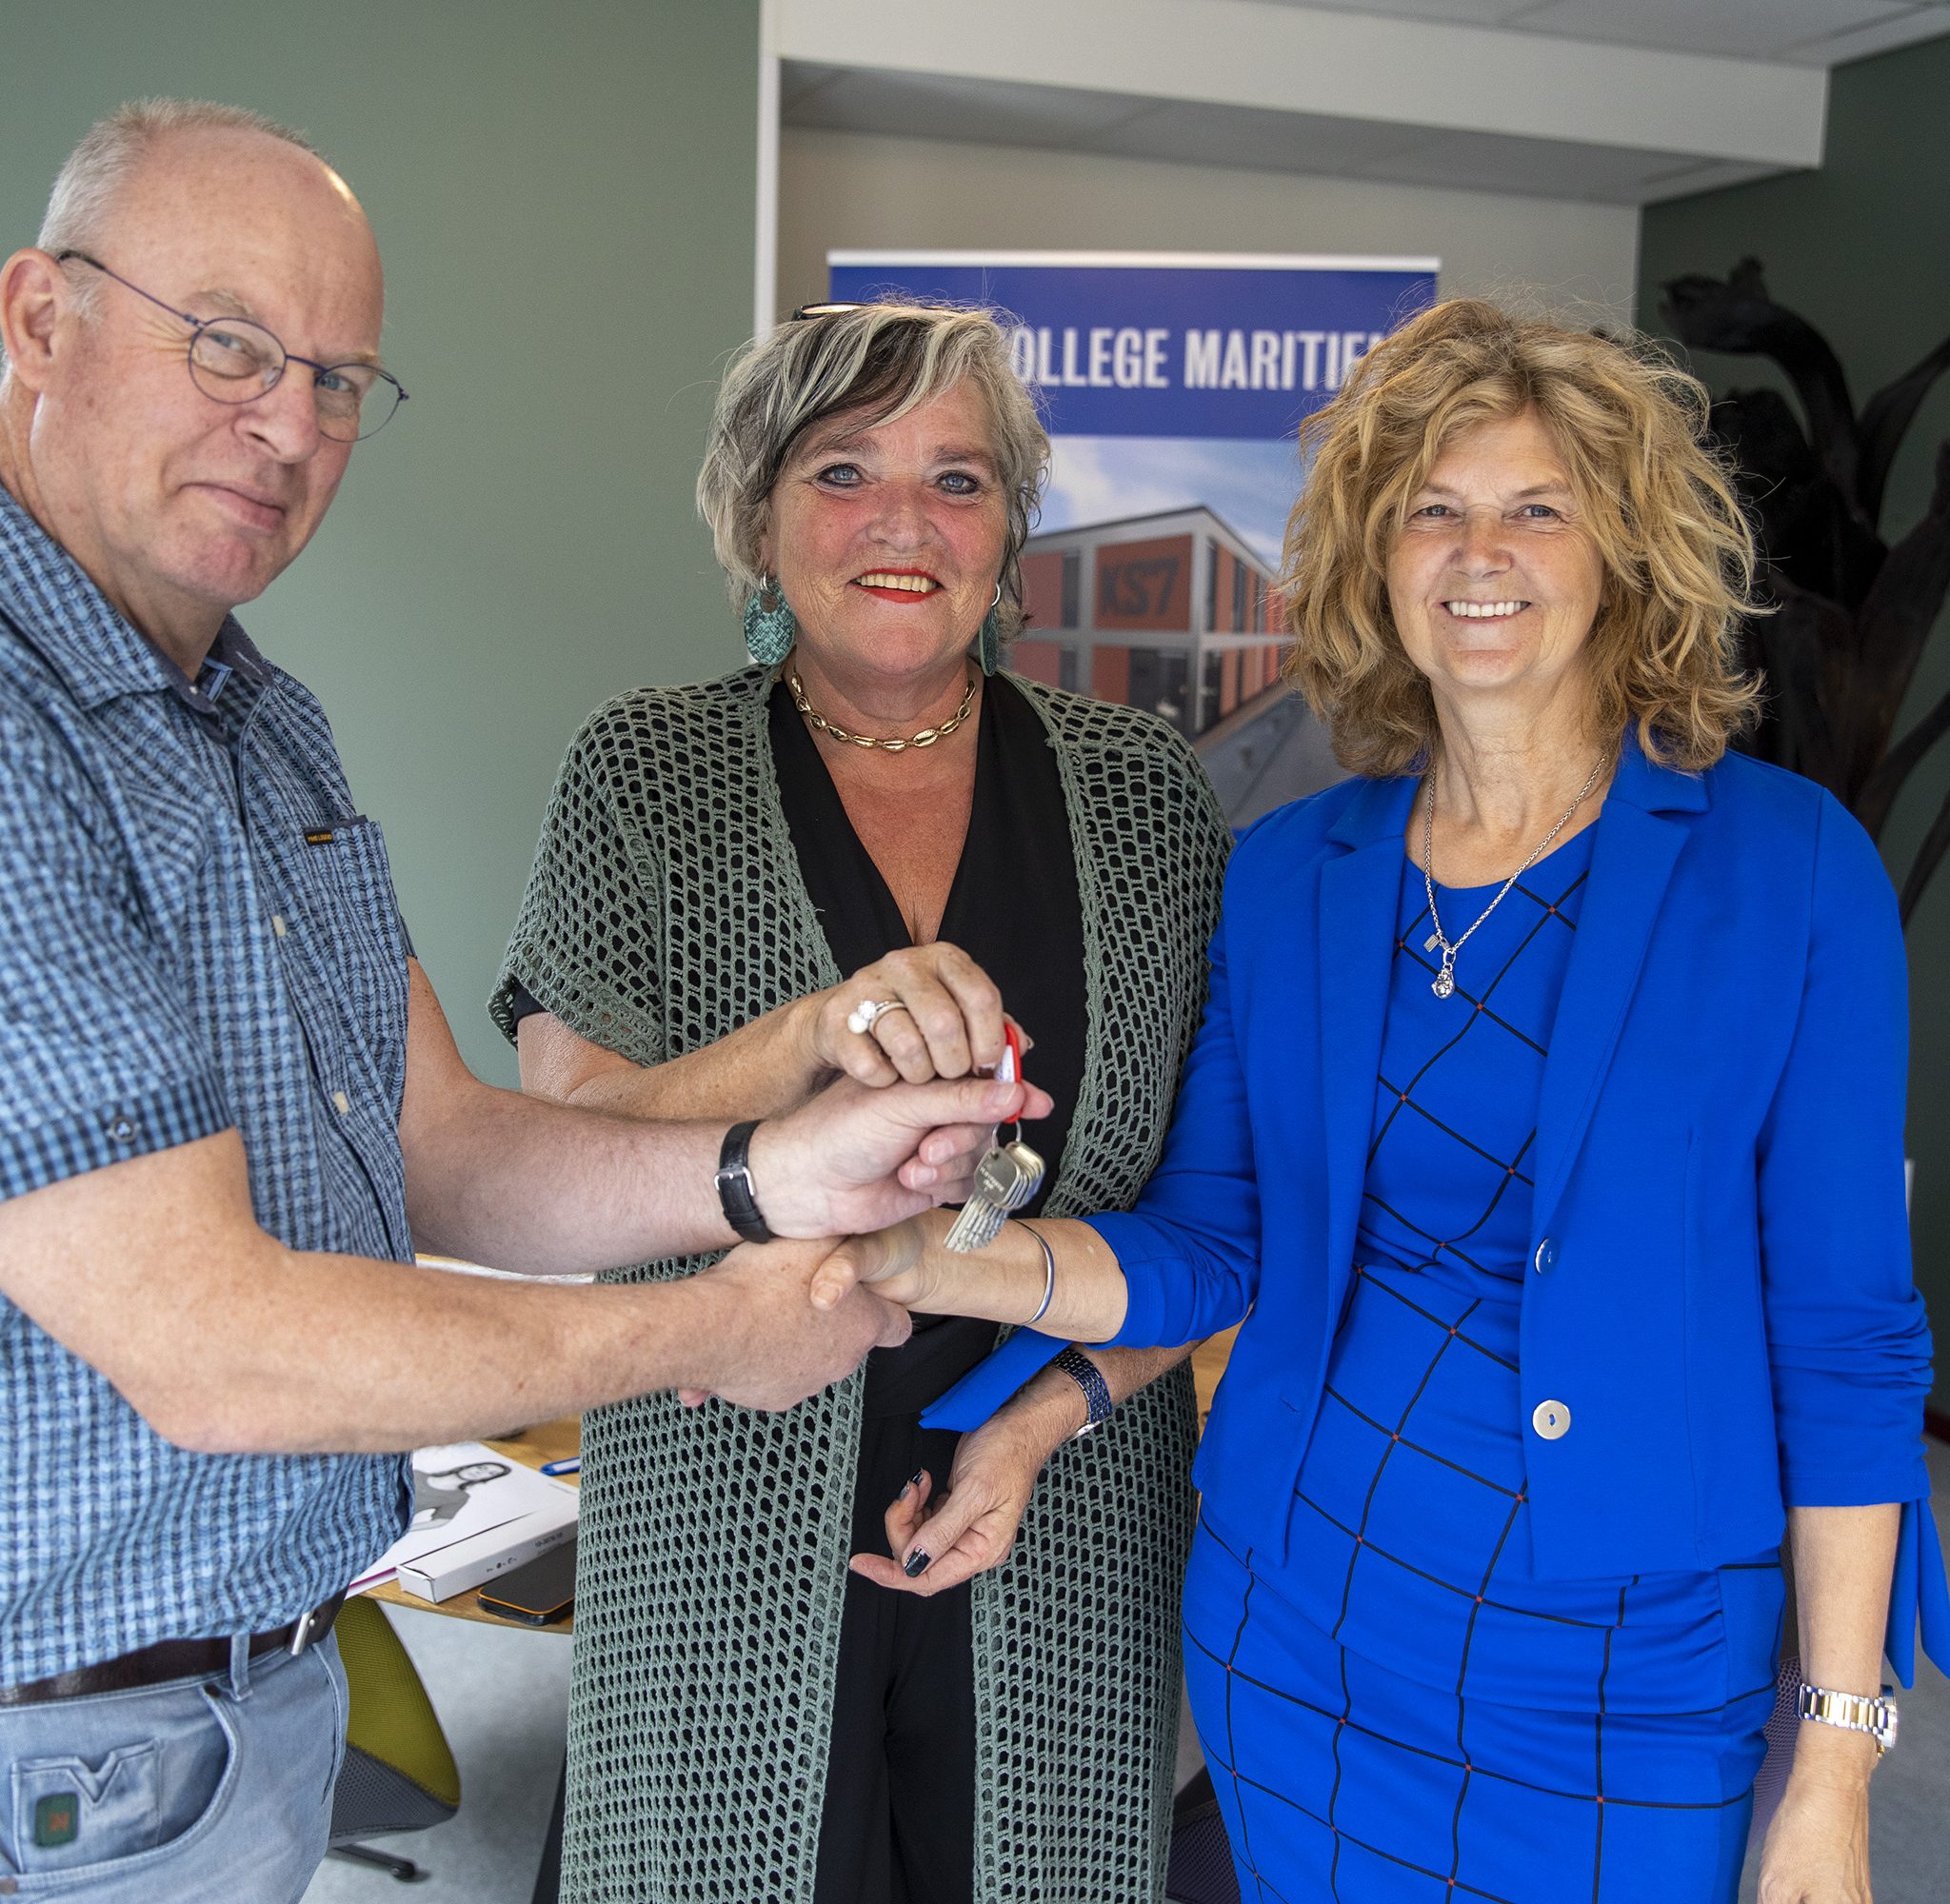 Locatiebeheerder Gea Meems en hoofdconciërge Ella Groeneveld nemen trots de sleutel in ontvangst van de nieuwe studentenhuisvesting Nova College Maritiem. (Foto NCM)